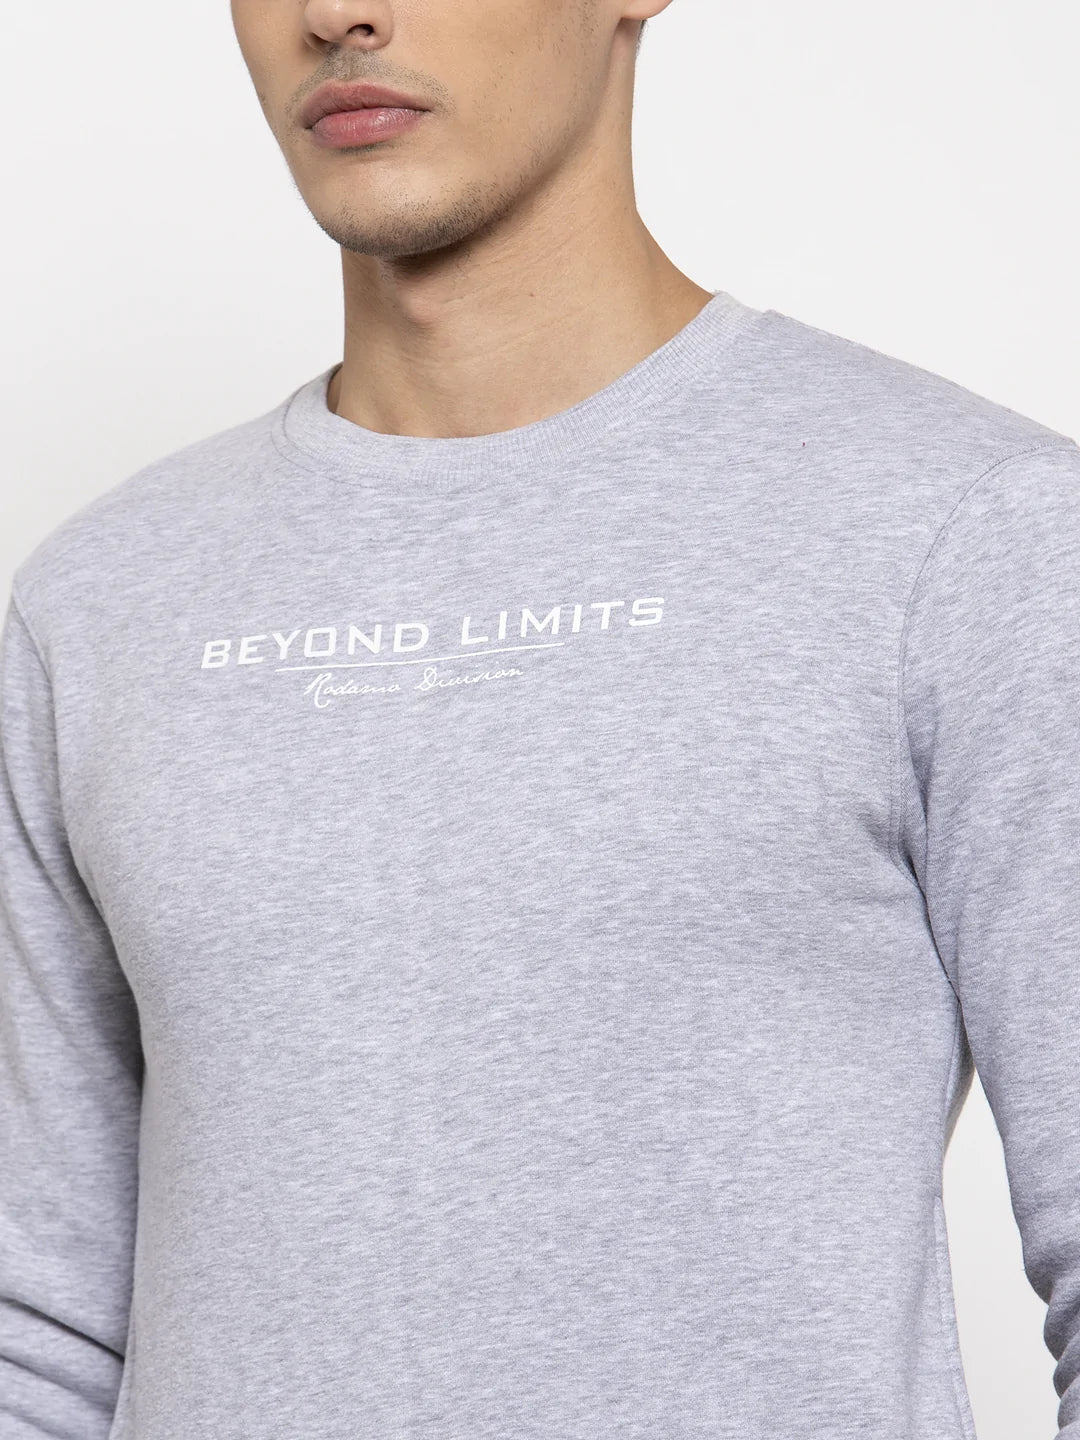 Men Grey Solid Sweatshirt